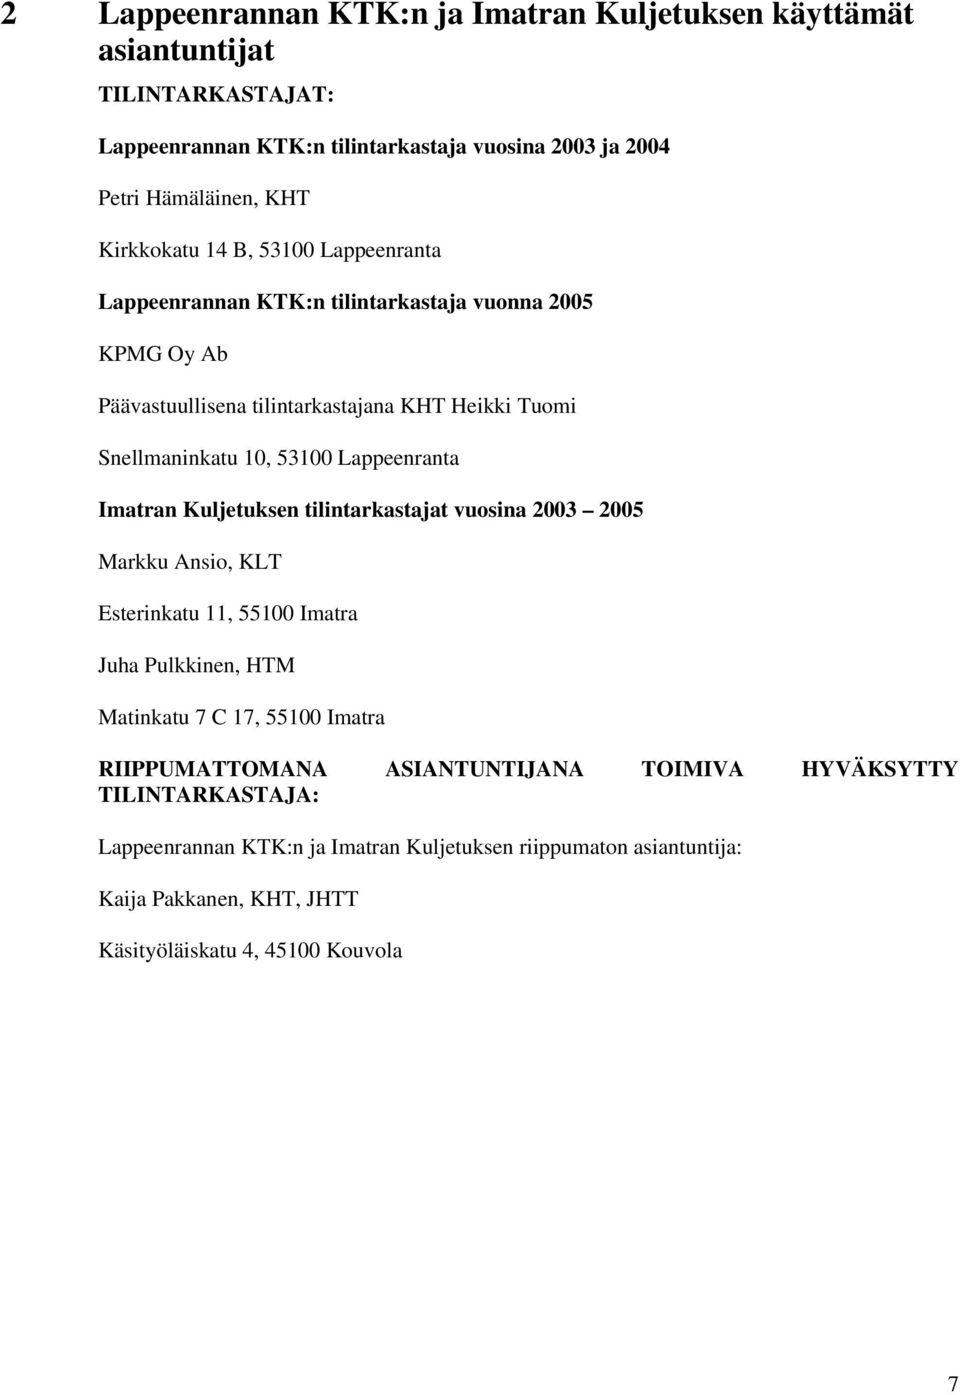 Lappeenranta Imatran Kuljetuksen tilintarkastajat vuosina 2003 2005 Markku Ansio, KLT Esterinkatu 11, 55100 Imatra Juha Pulkkinen, HTM Matinkatu 7 C 17, 55100 Imatra